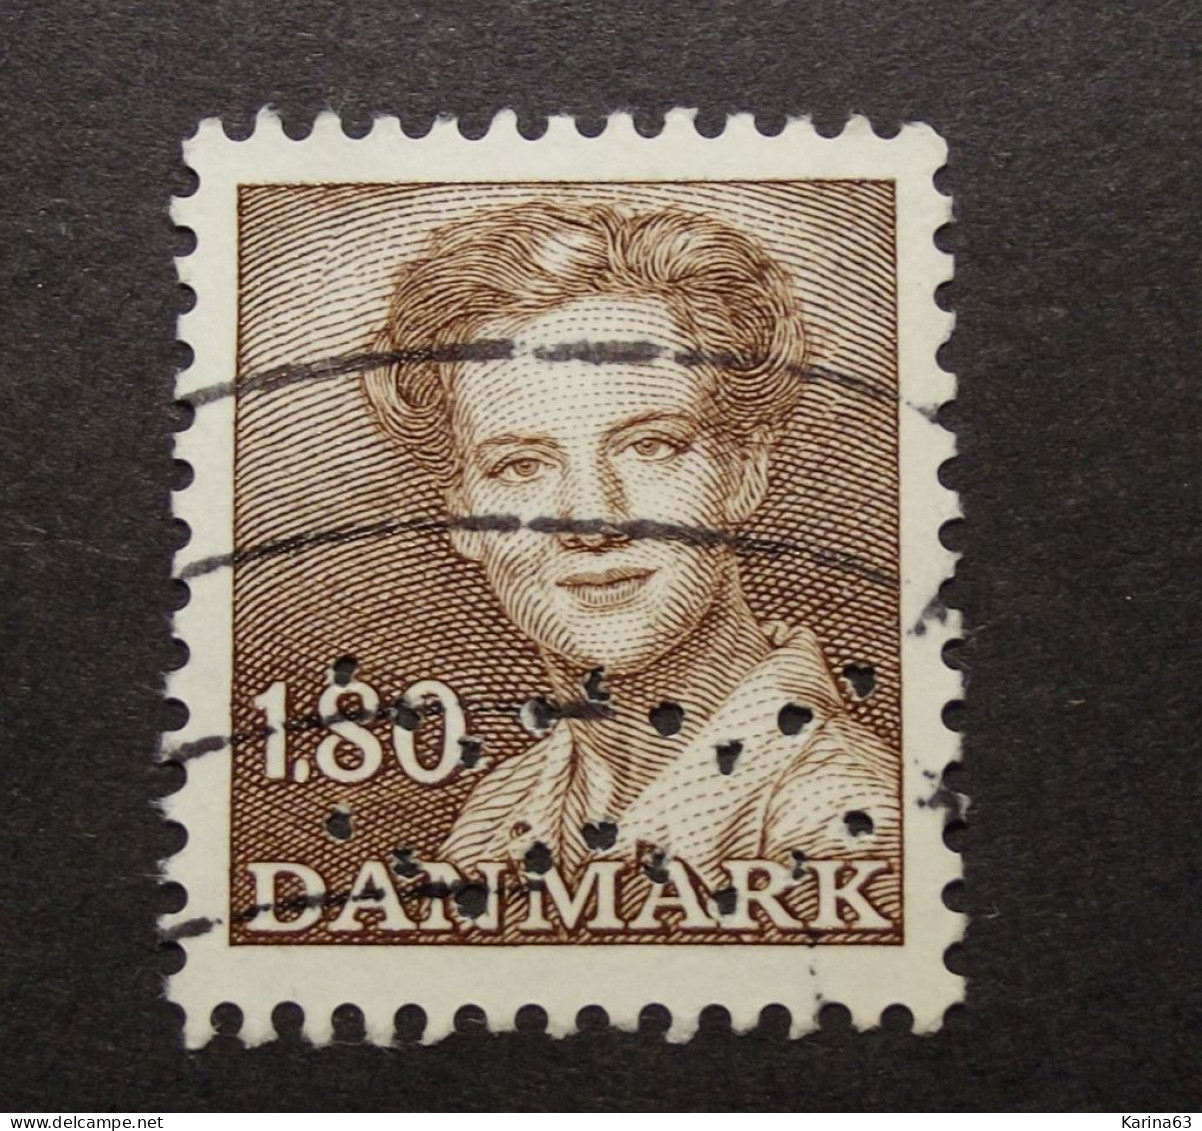 Denmark  - Danemark - 1975 - ( Queen Margrethe ) Perfin - Lochung -  Waves - Kobenhavns Kommune - Cancelled - Gebruikt